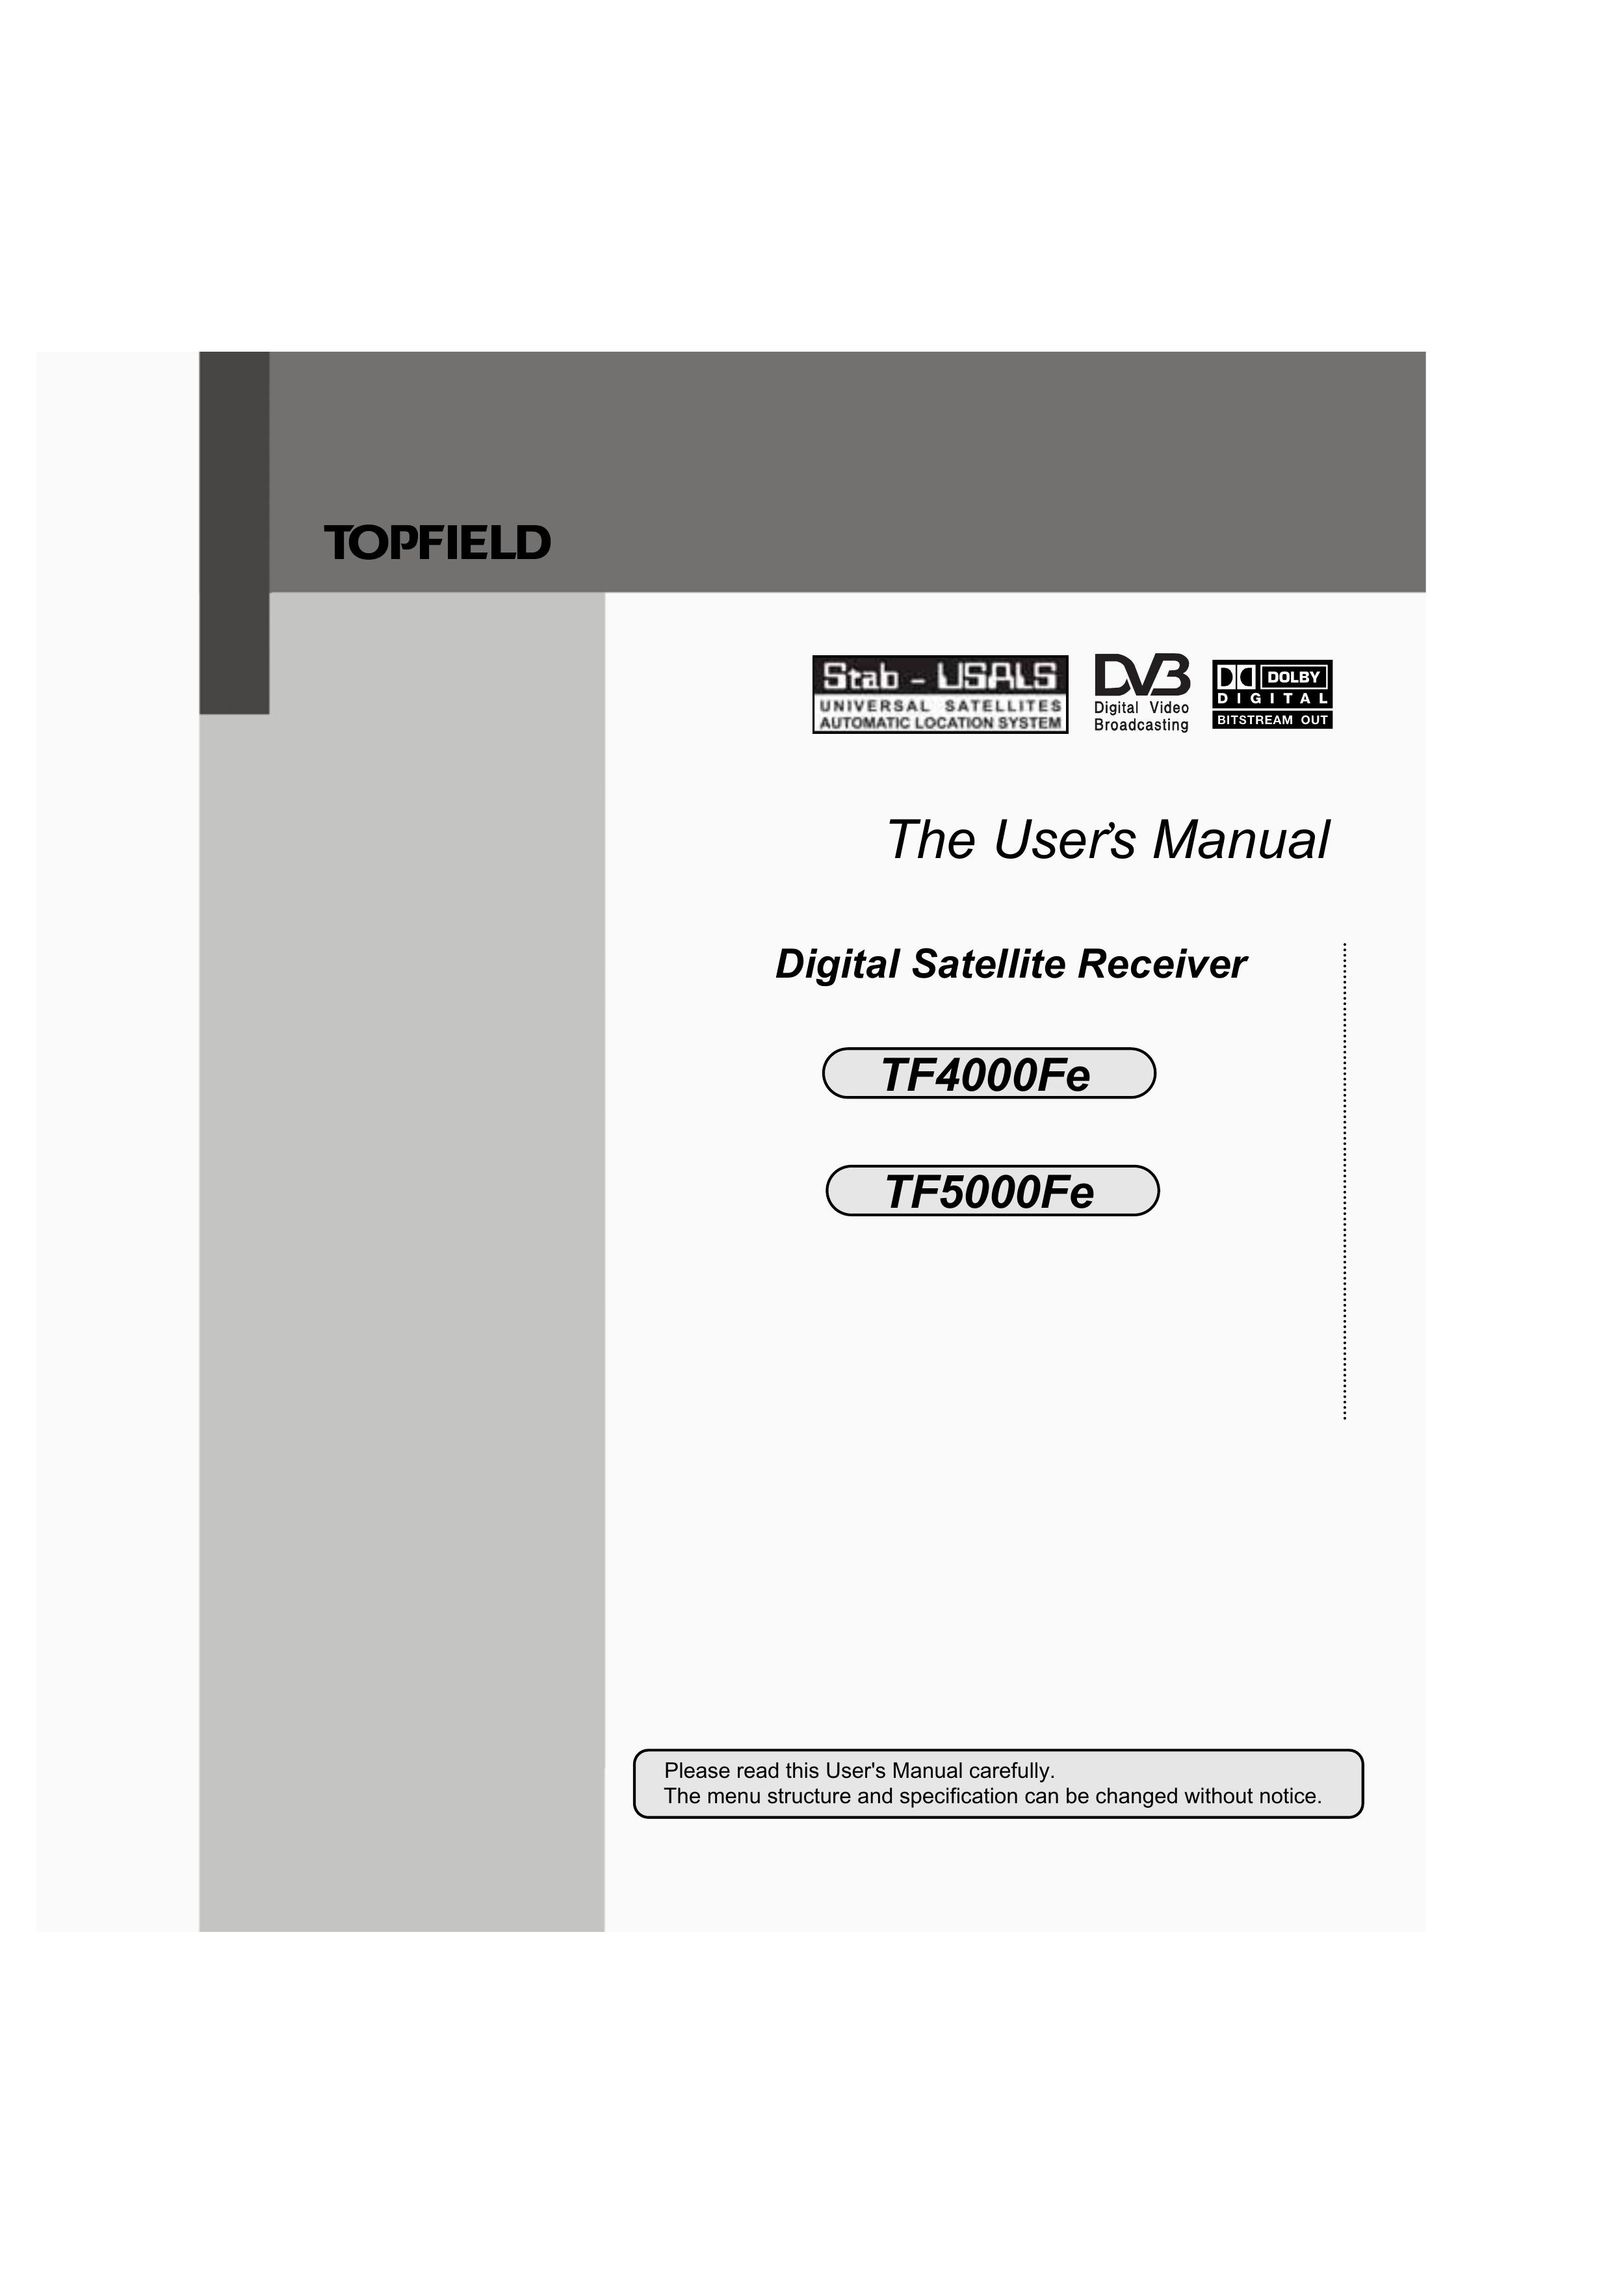 Topfield TF5000Fe Satellite TV System User Manual